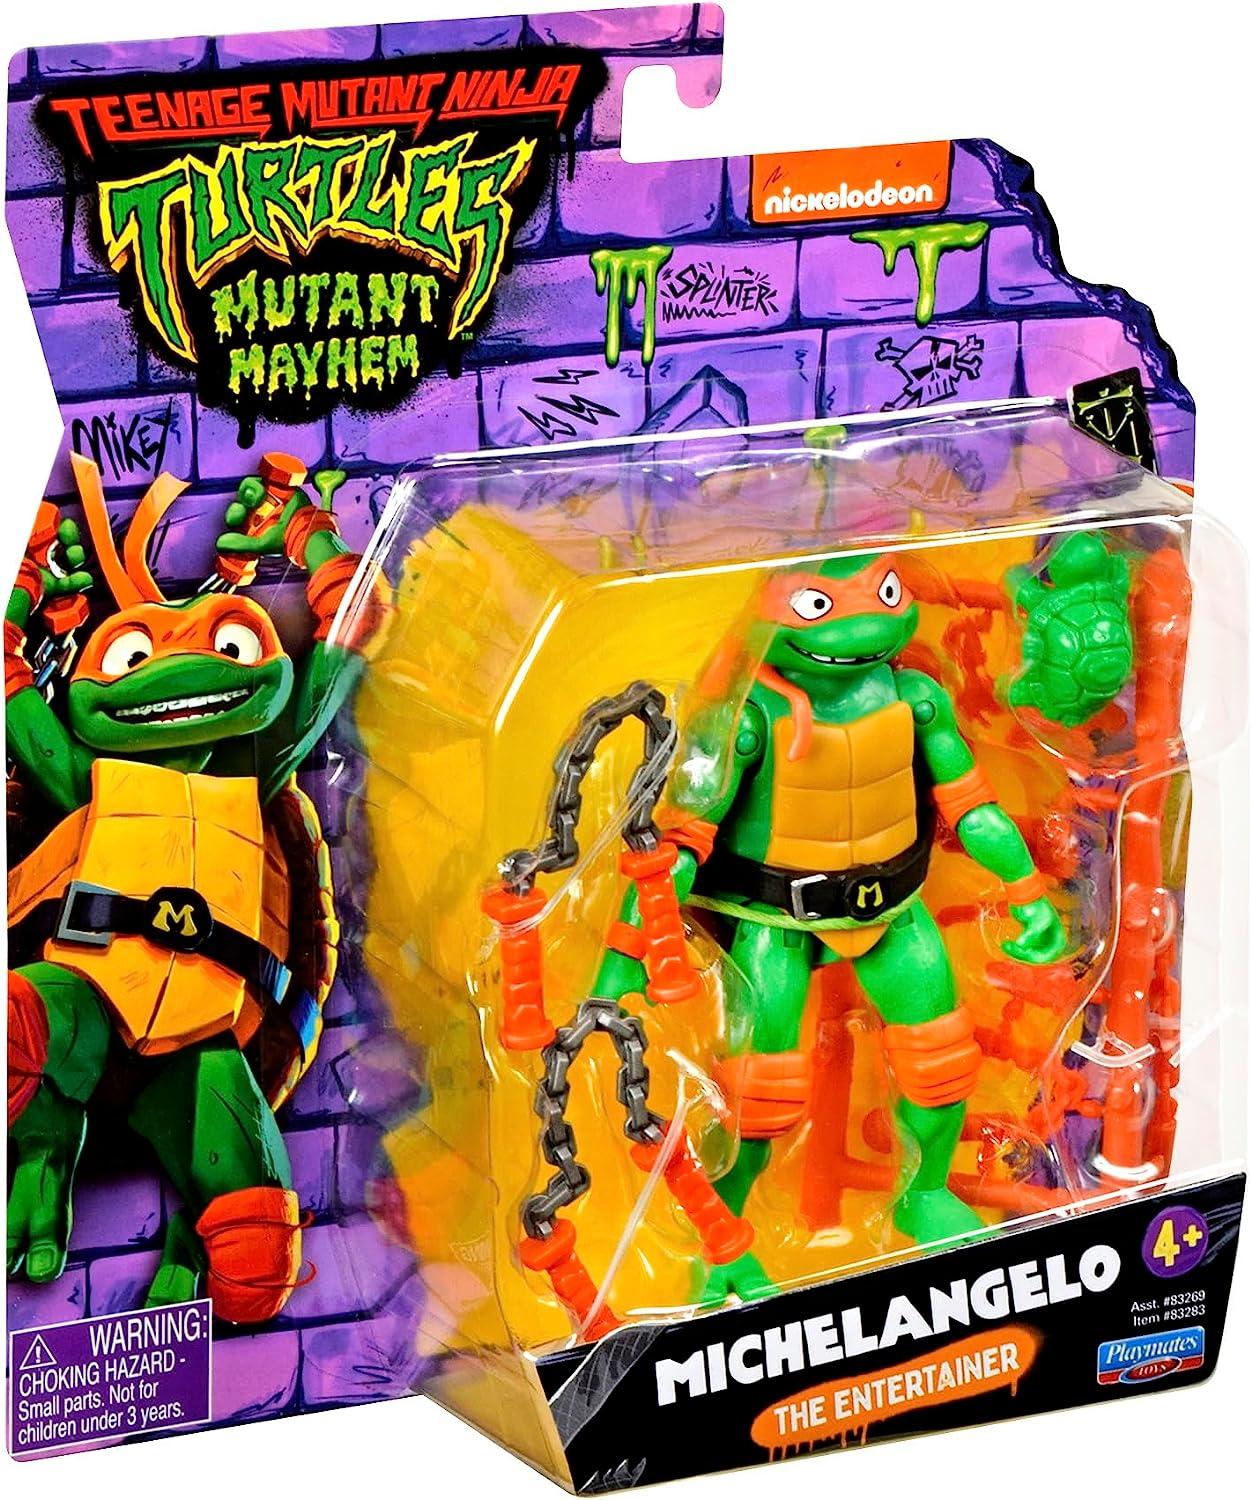 Teenage Mutant Ninja Turtles MICHELANGELO Mutant Mayhem